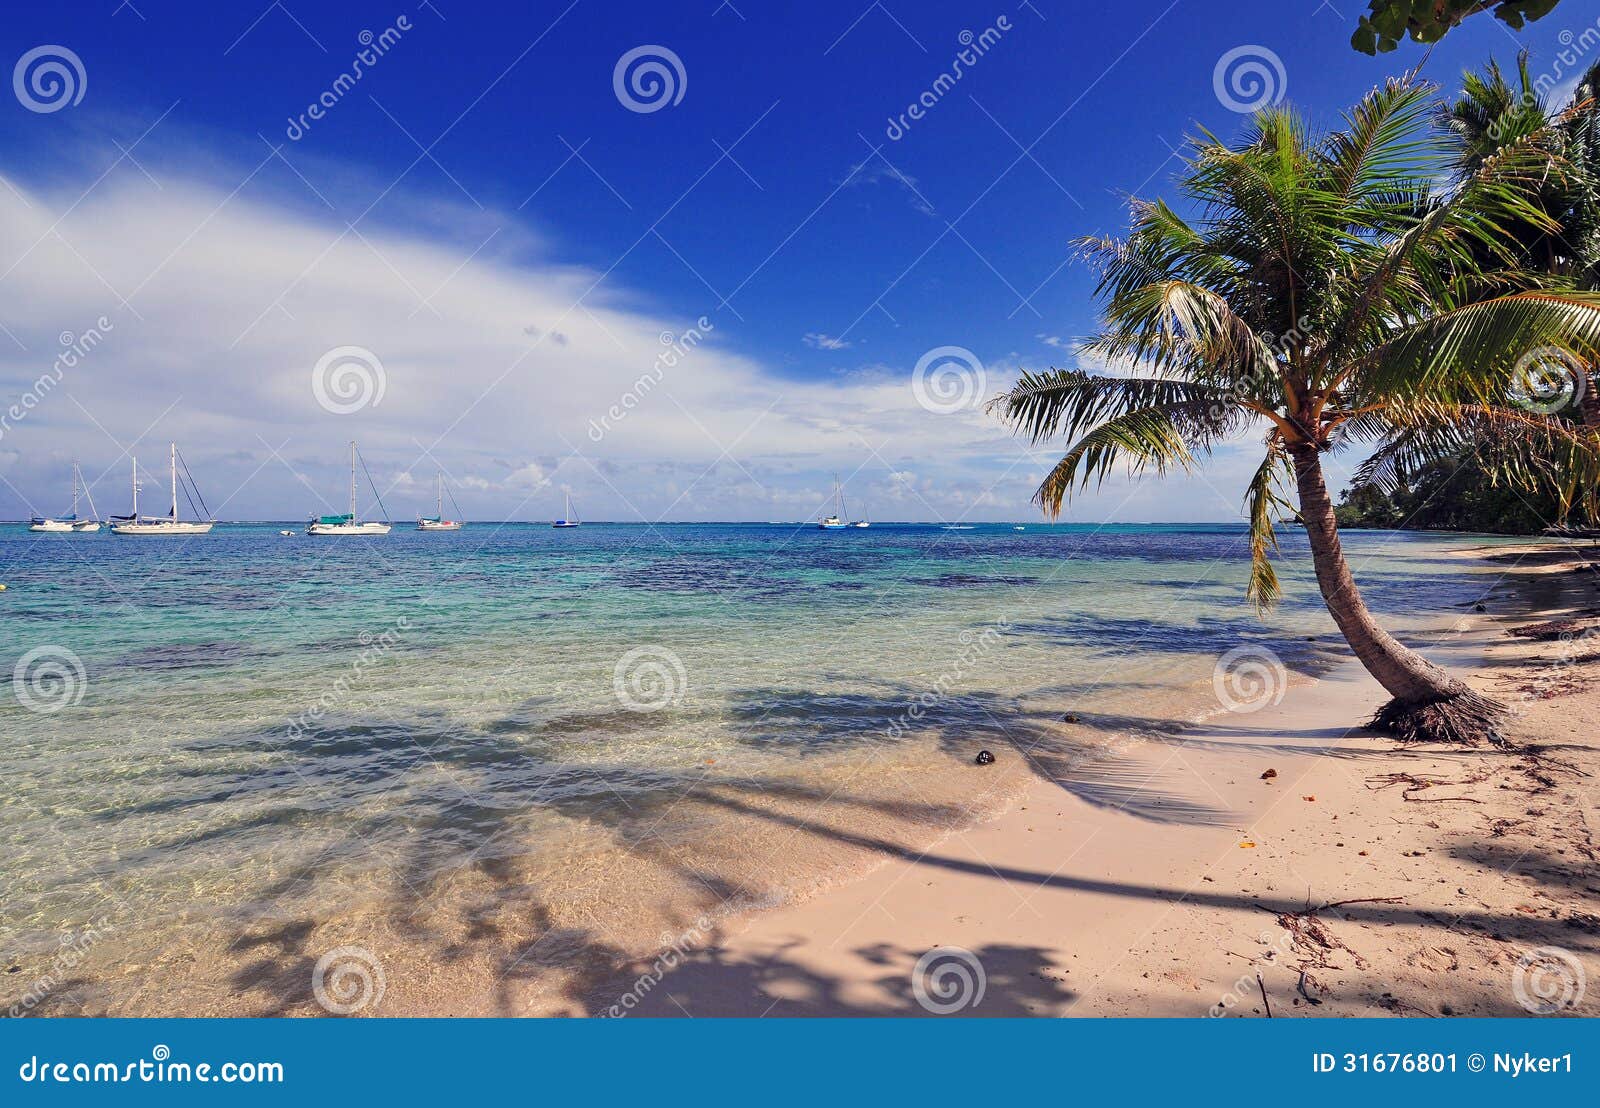 塔希提岛-法属玻利尼西亚-南太平洋 库存照片. 图片 包括有 指向, 热带, 节假日, 海洋, 比基尼泳装 - 27776438